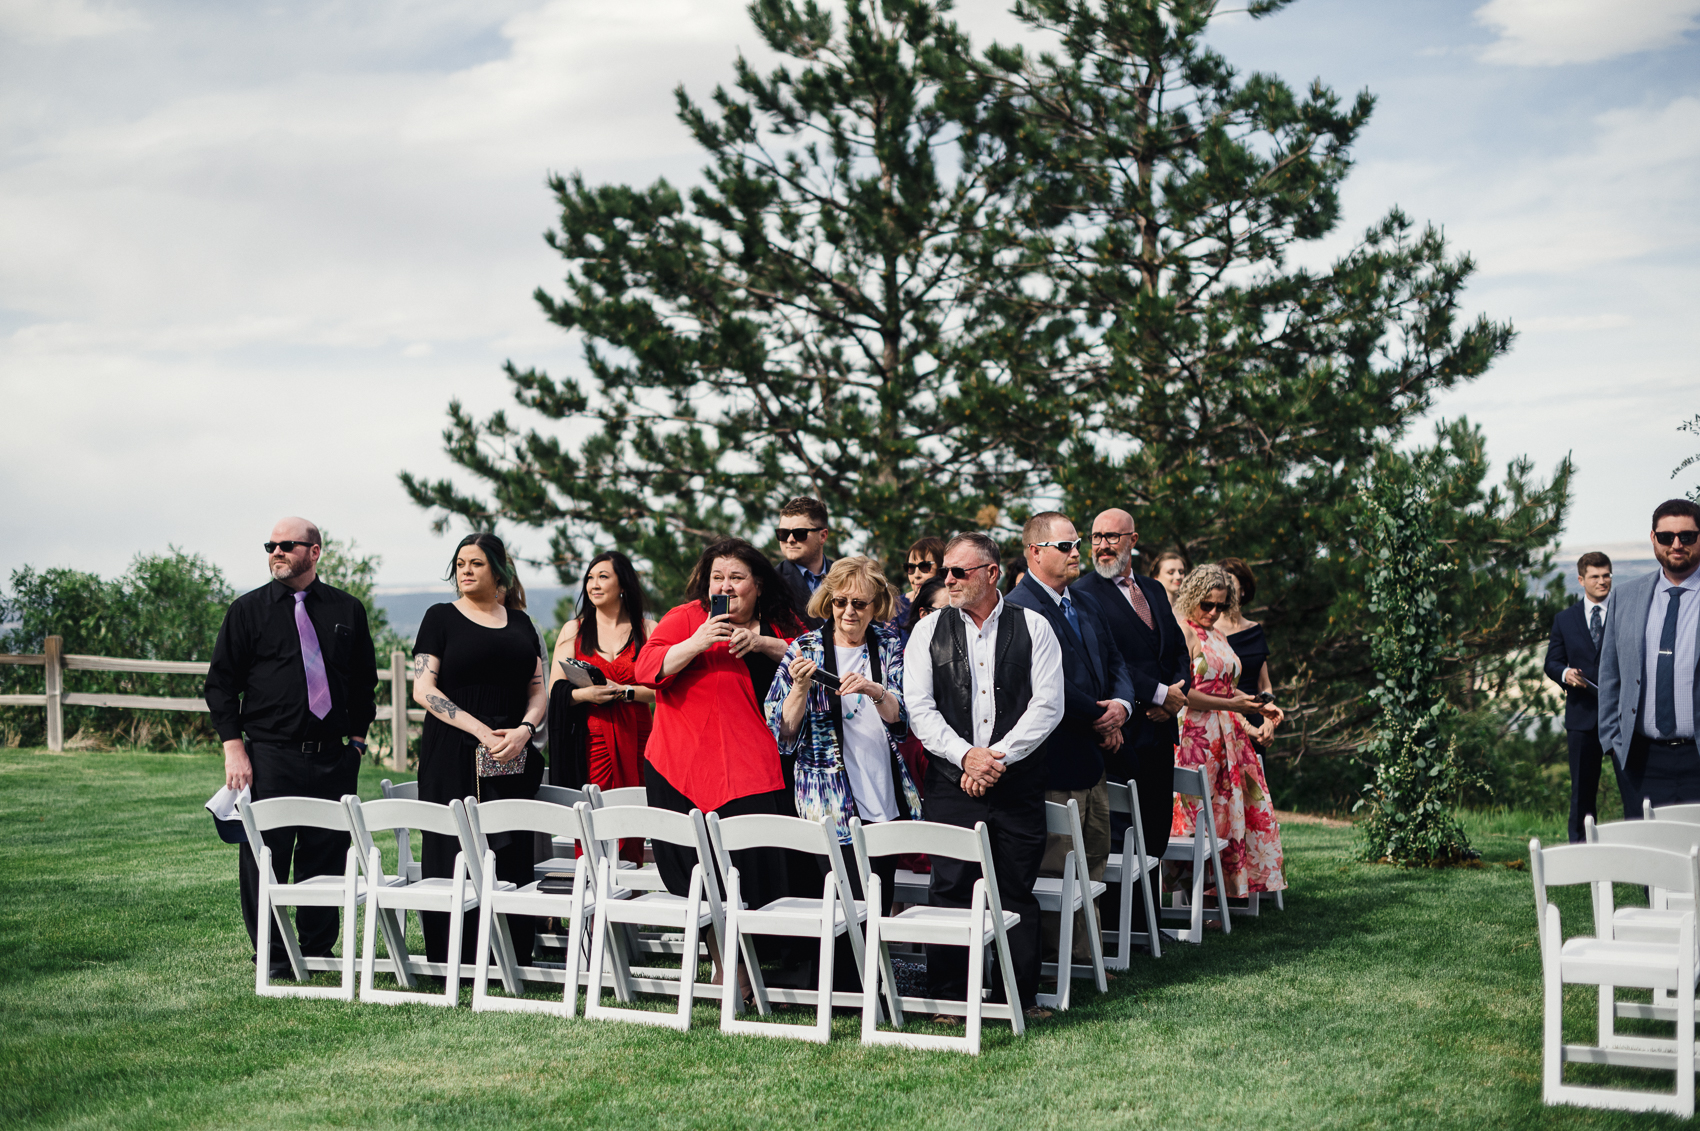 Colorado Wedding at The Broadmoor